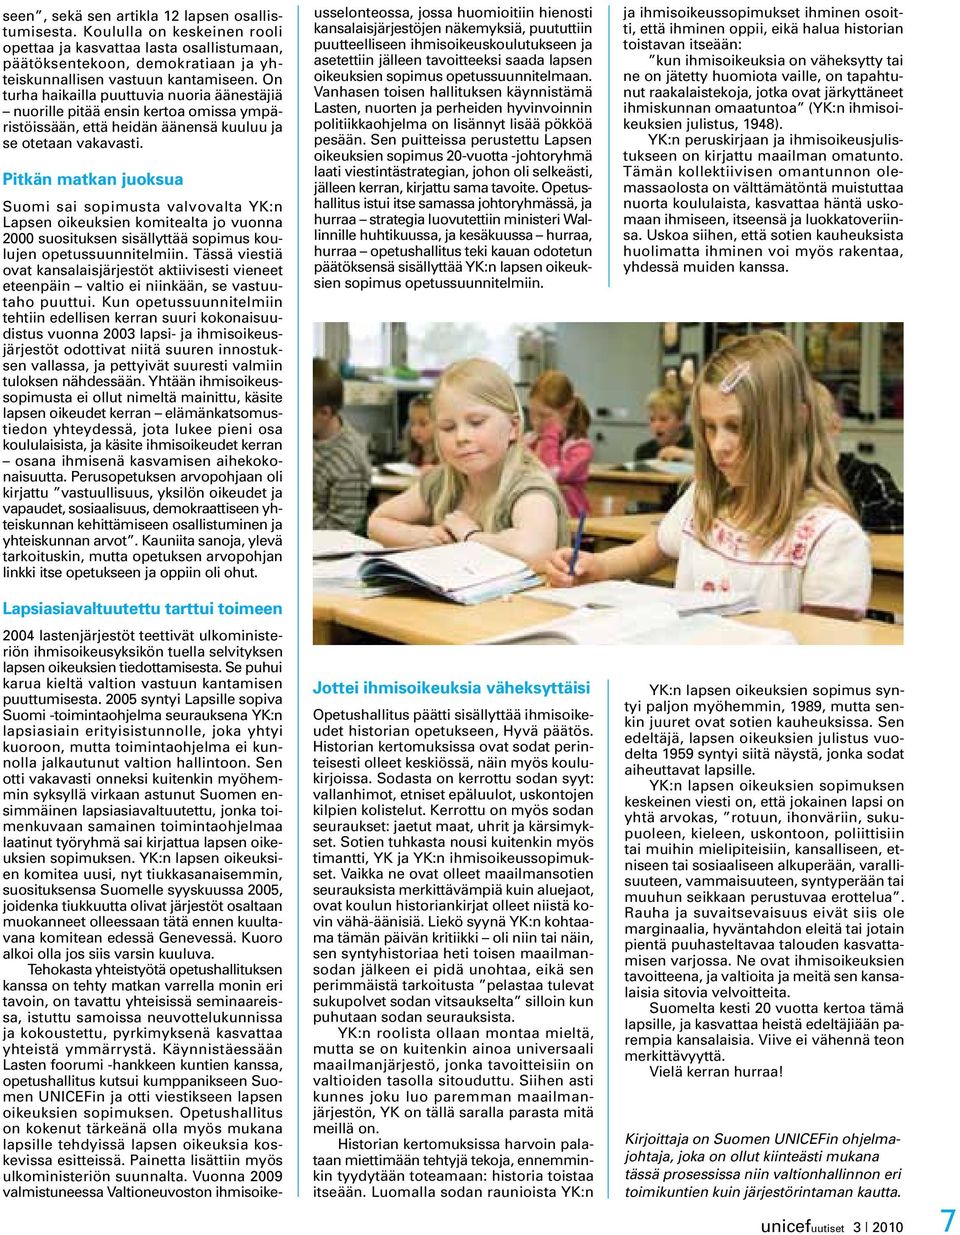 Pitkän matkan juoksua Suomi sai sopimusta valvovalta YK:n Lapsen oikeuksien komitealta jo vuonna 2000 suosituksen sisällyttää sopimus koulujen opetussuunnitelmiin.